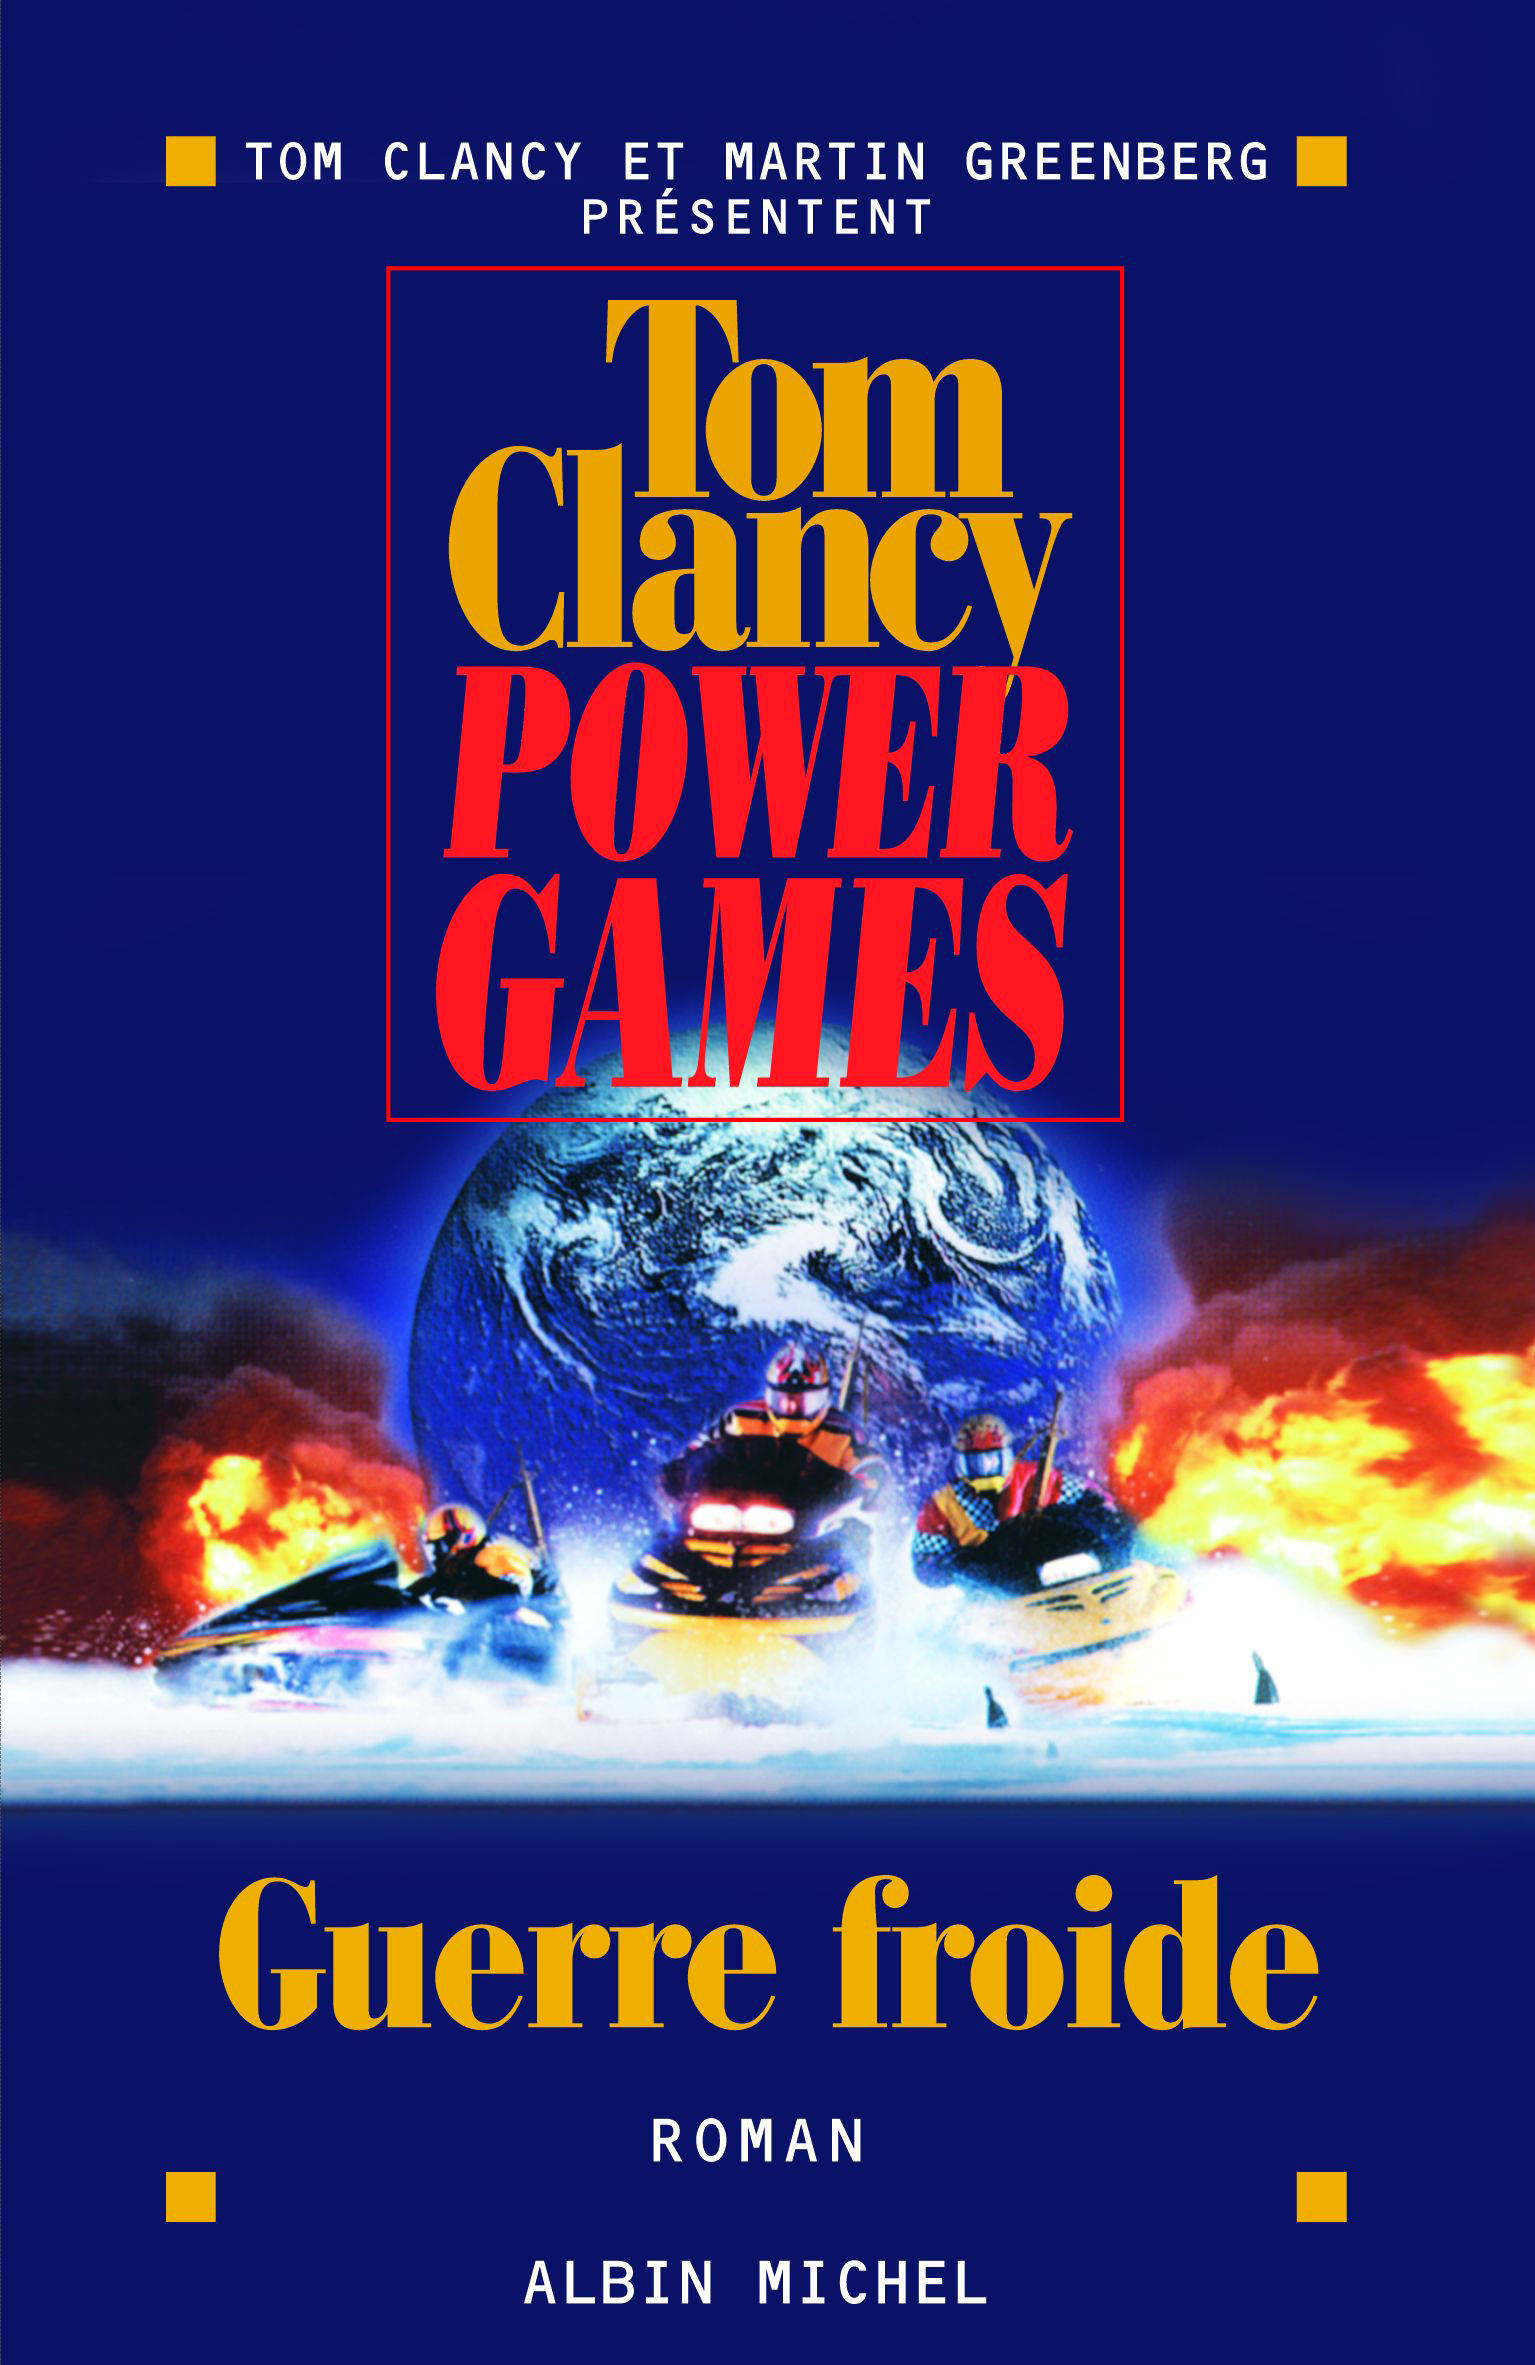 Couverture du livre Power games - tome 5